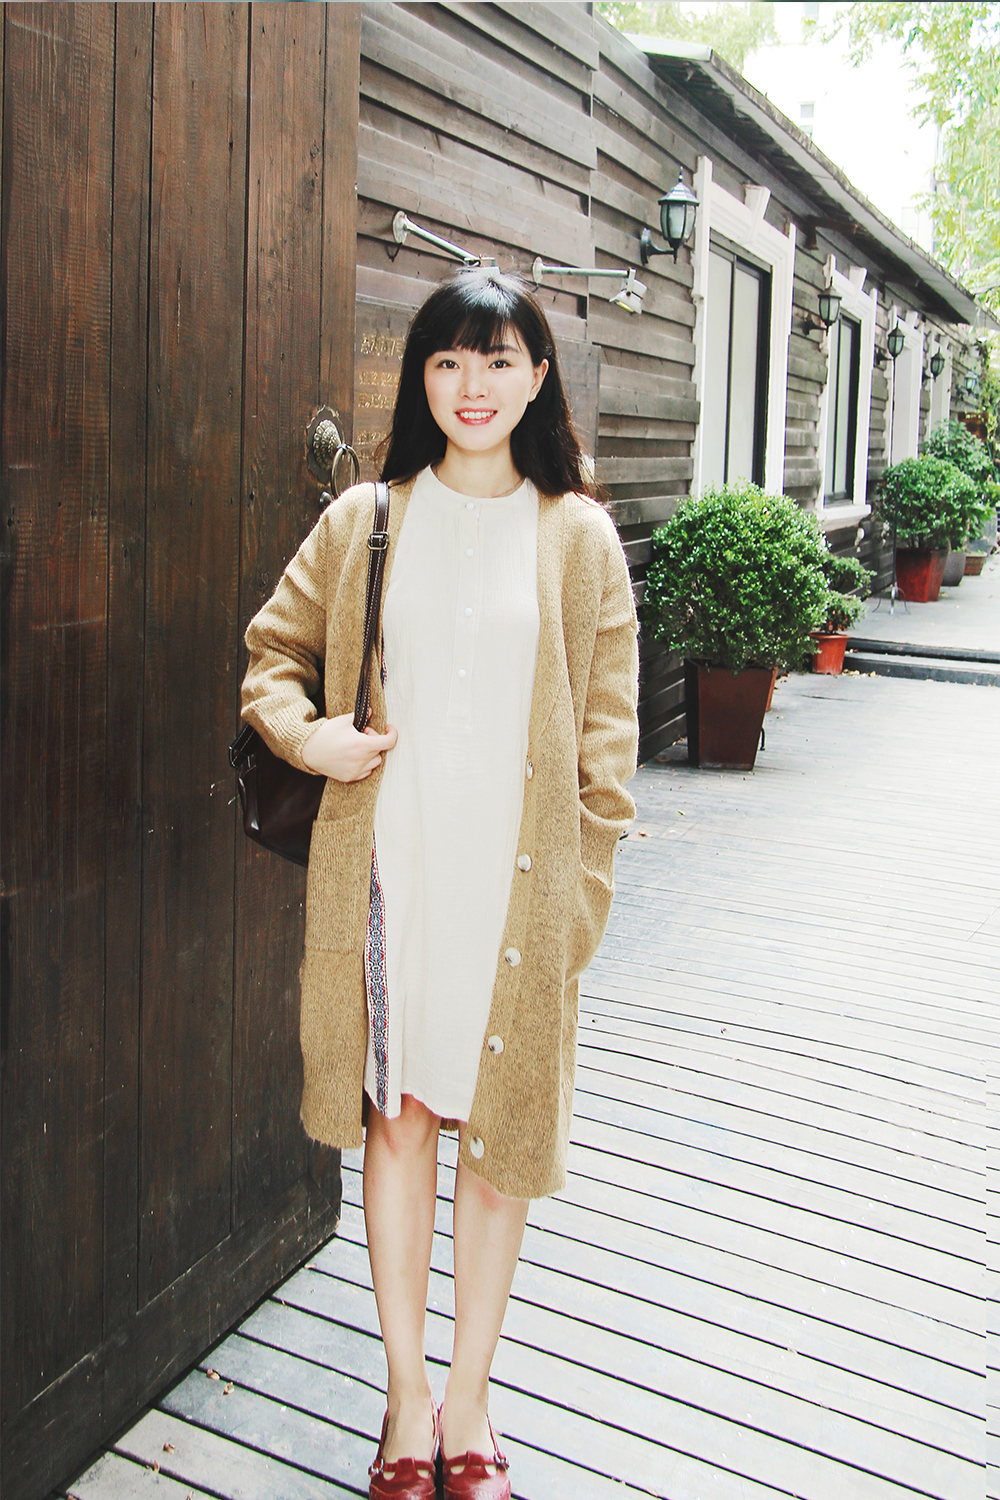 羊毛针织外套搭配素简的连衣裙,气质优雅